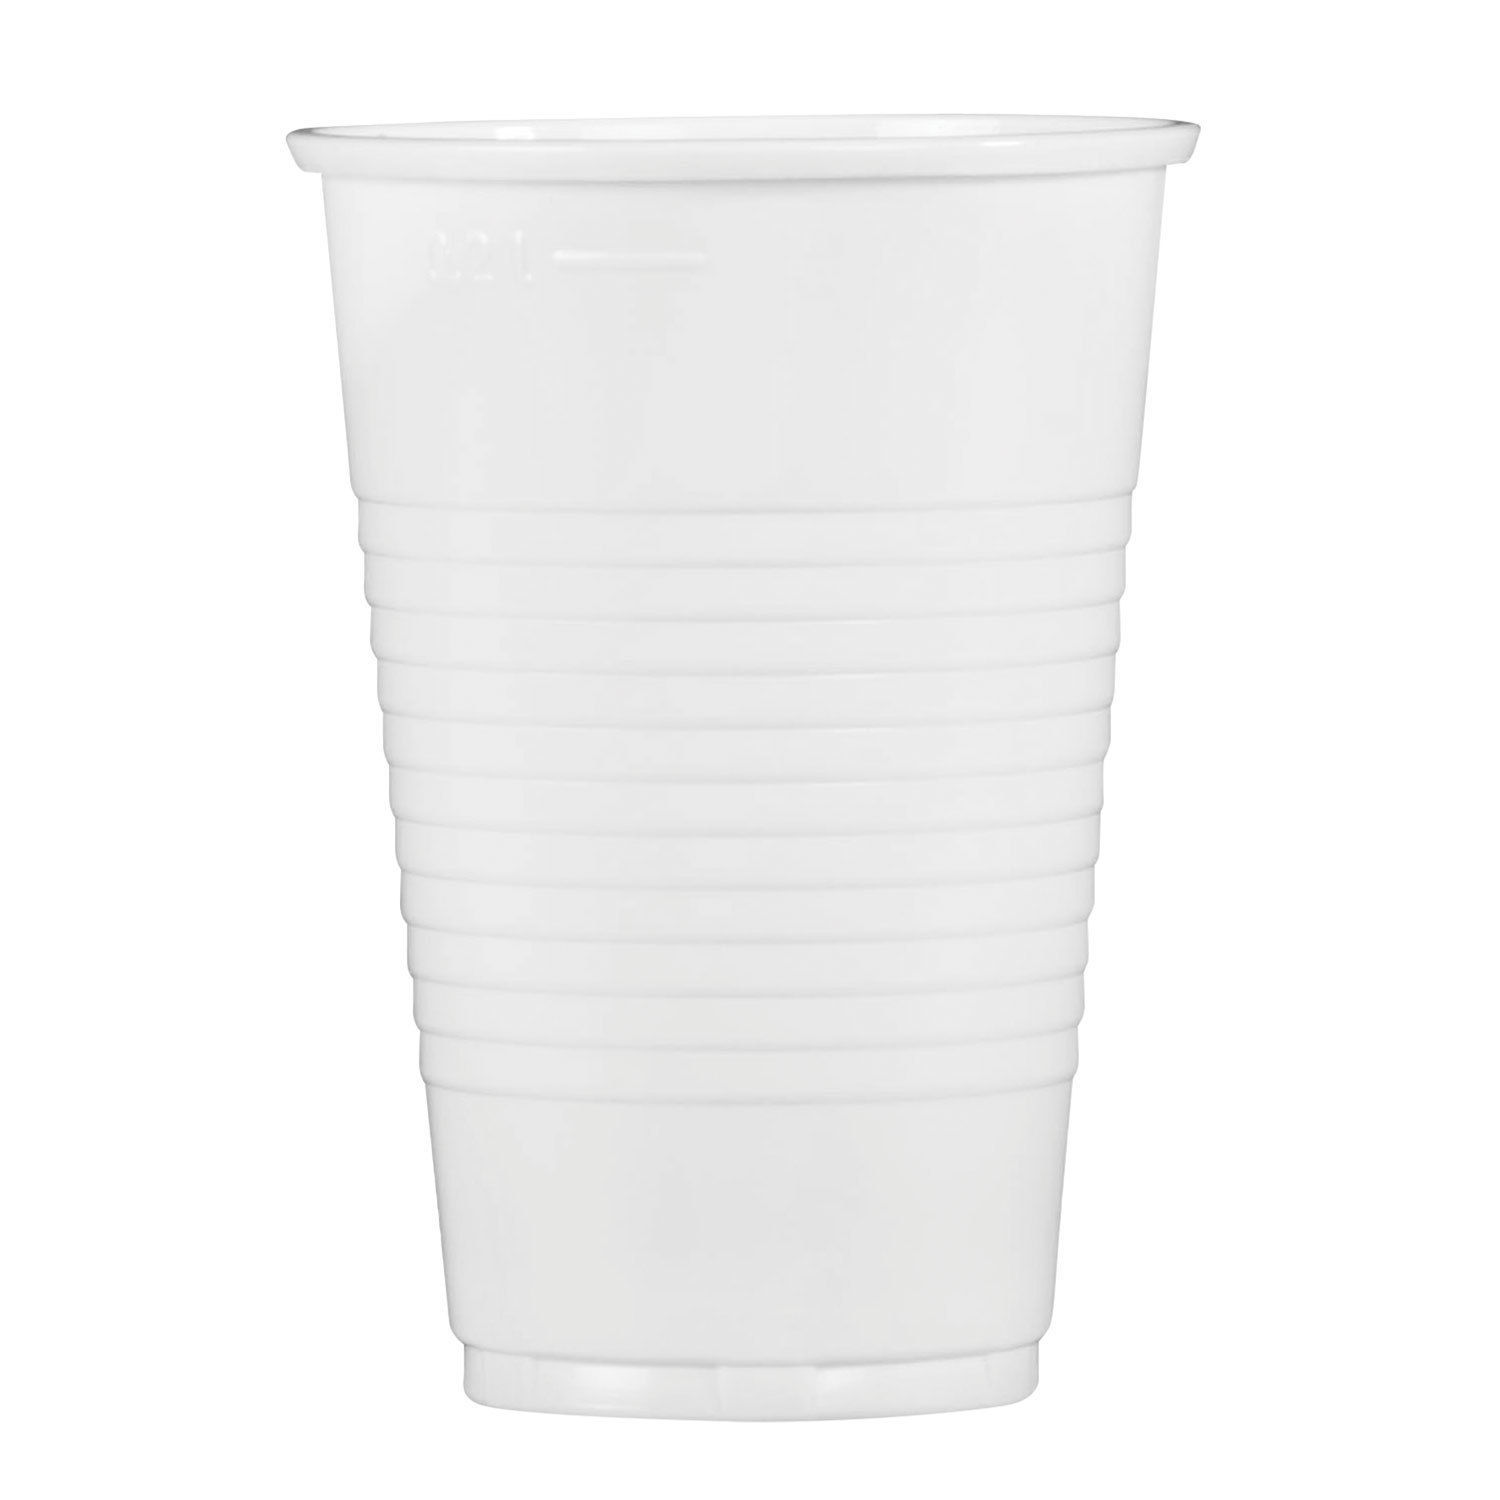 Одноразовые стаканы 200 мл, КОМПЛЕКТ 100 шт., пластиковые, белые, ПП .